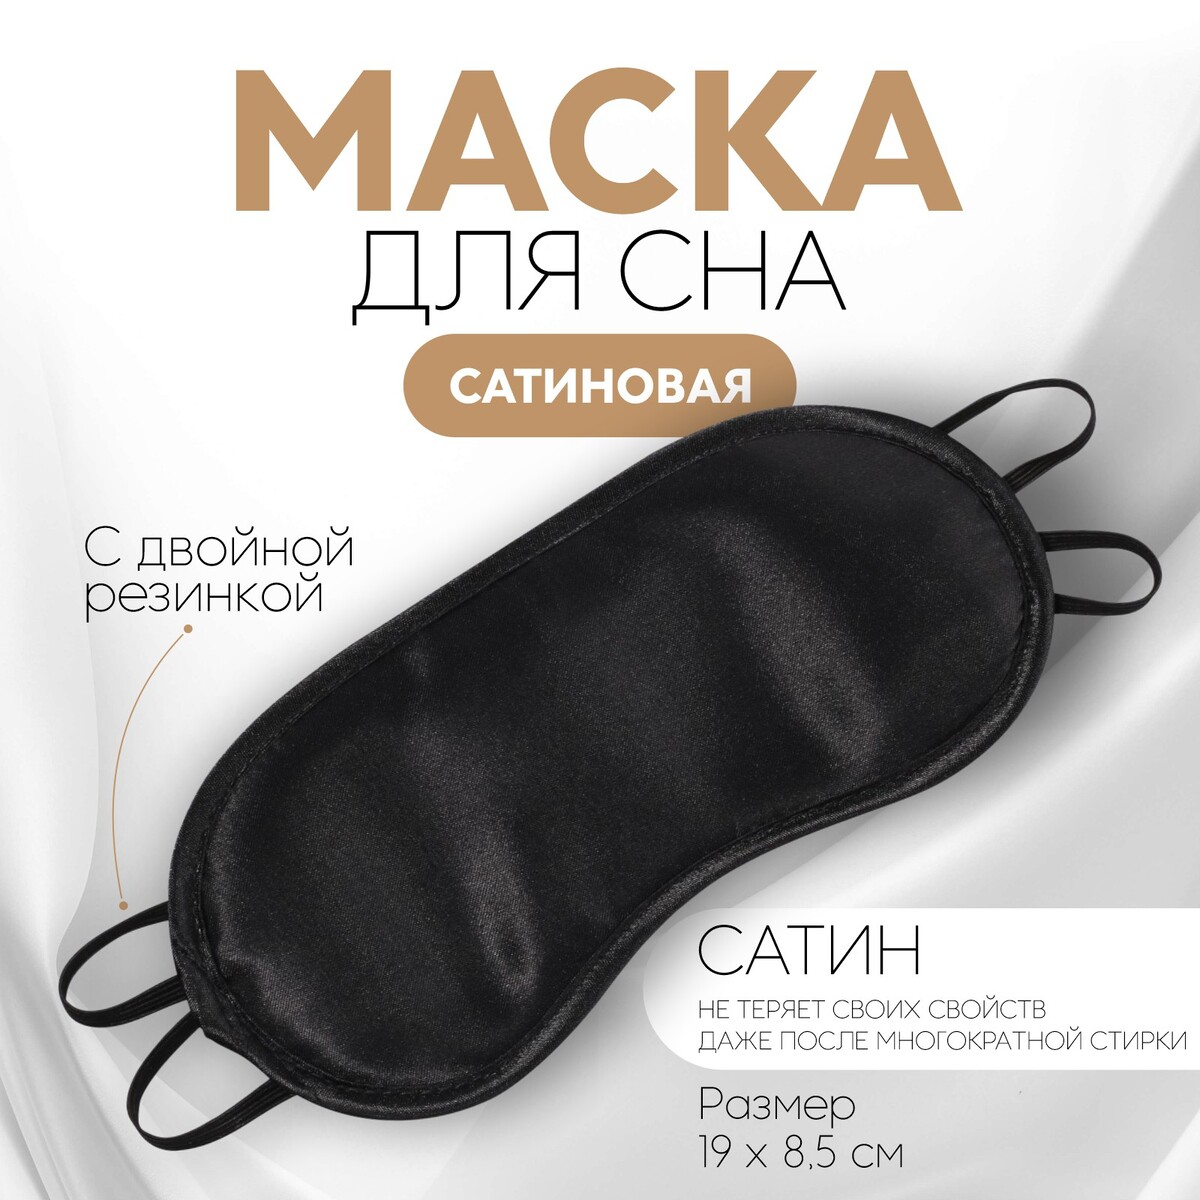 Маска для сна, сатиновая, двойная резинка, 19 × 8,5 см, цвет черный маска для сна сатиновая двойная резинка 19 × 8 5 см